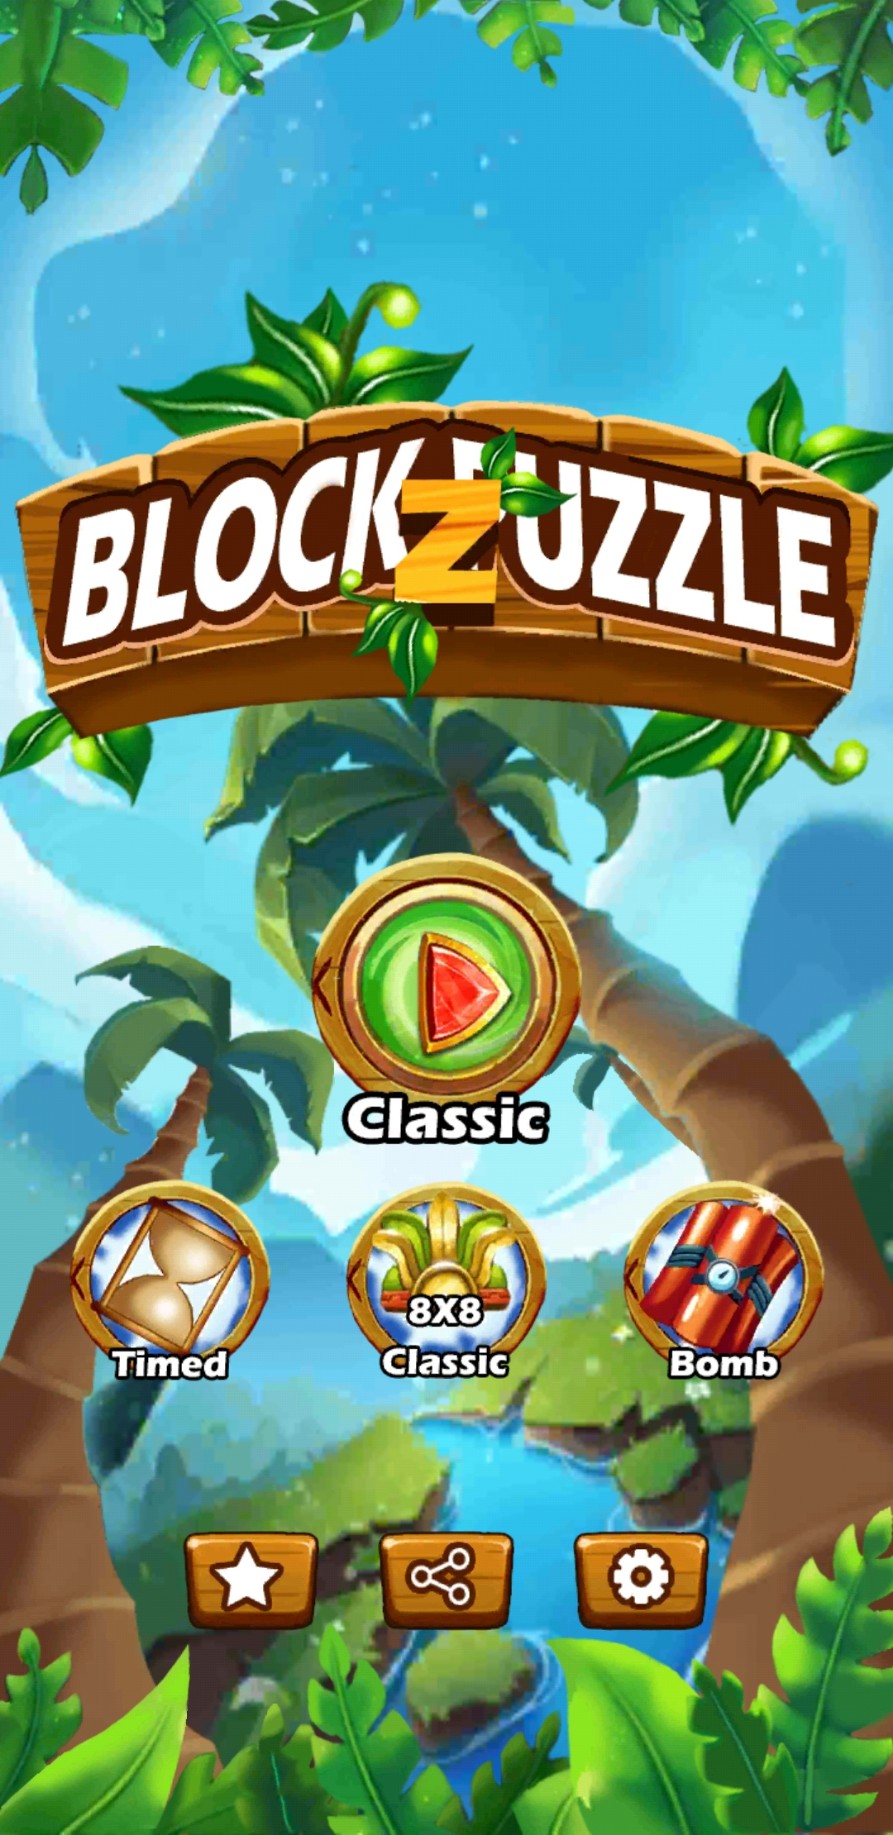 Block Puzzle Classic Jewel - Block Puzzle Game free